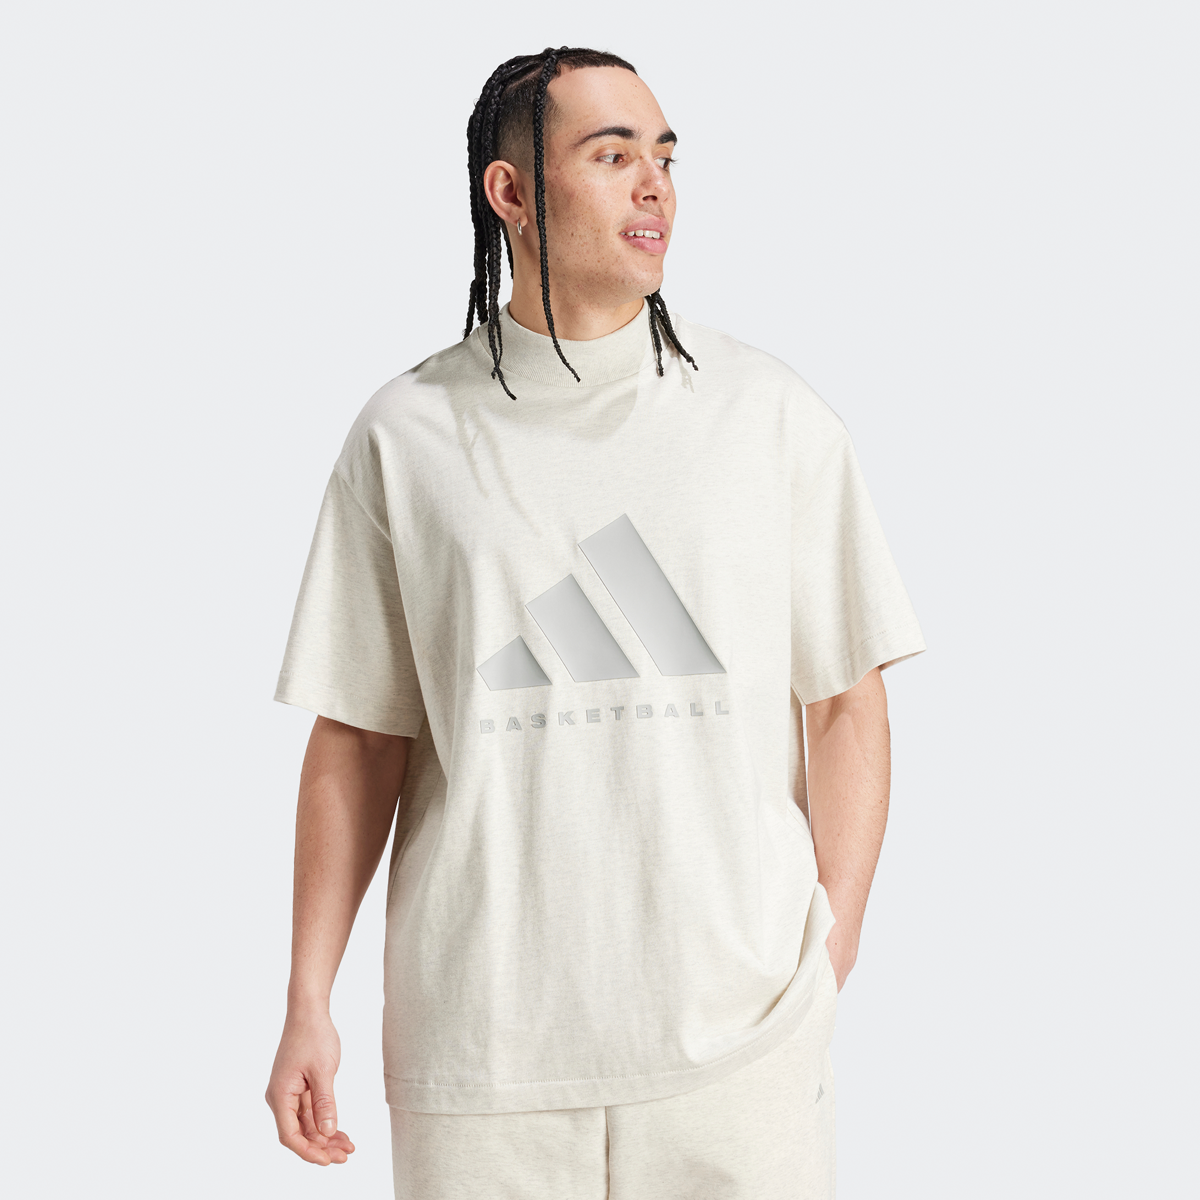 Adidas Originals One Cotton Jersey T-shirt T-shirts Heren cream white mel. maat: XL beschikbare maaten:S M L XL